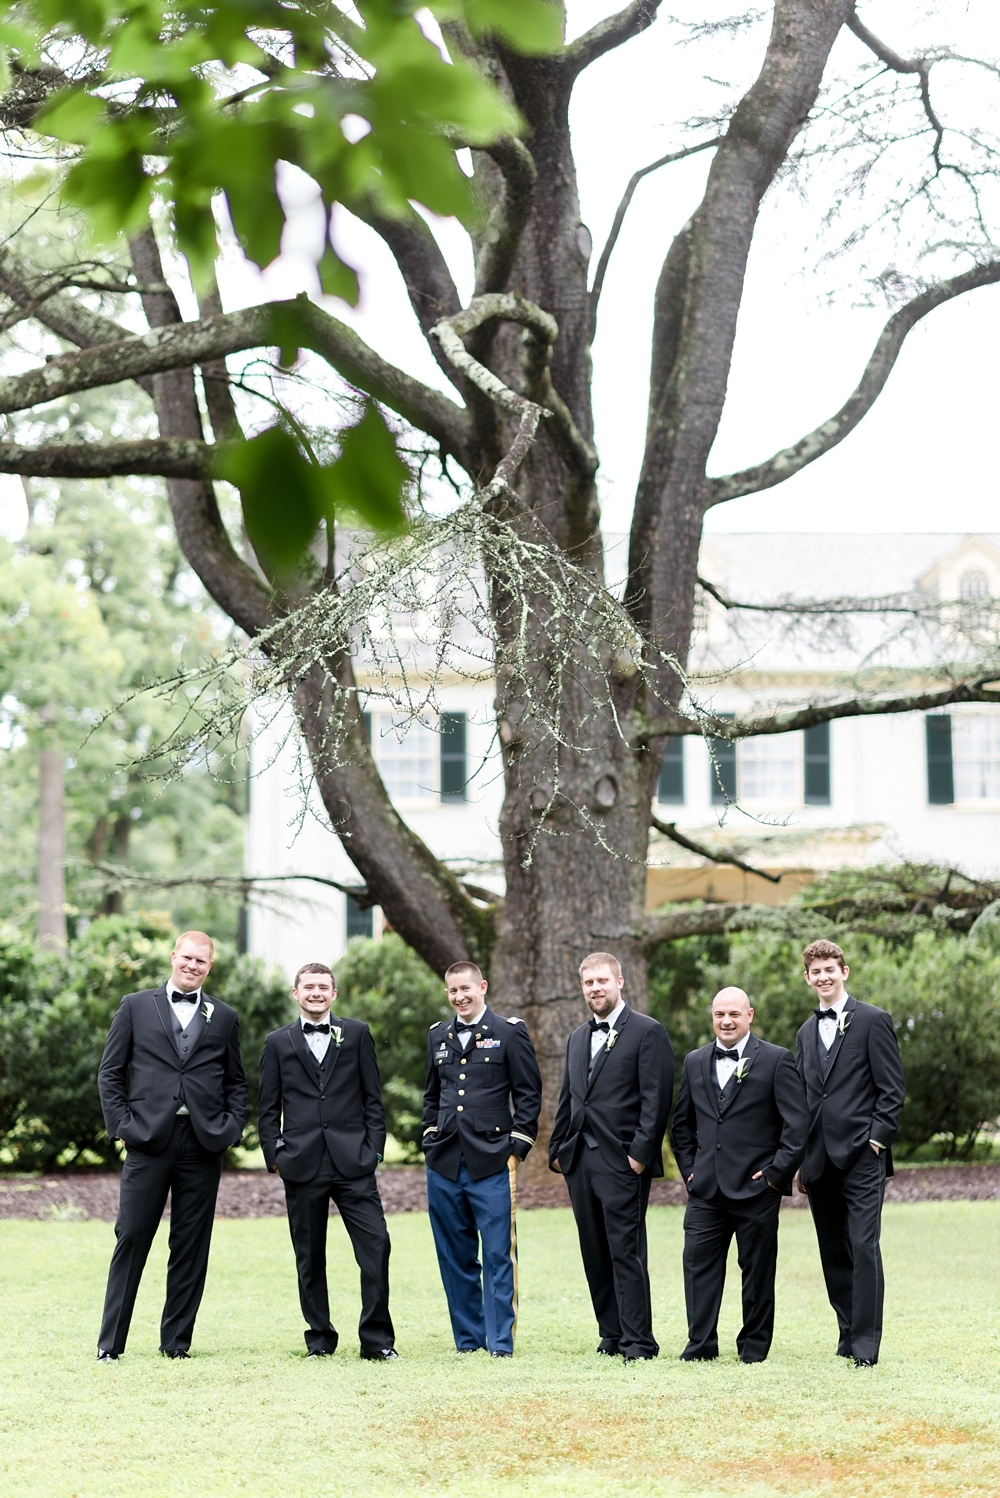 Groom and groomsmen at Rust Manor House wedding in Leesburg VA